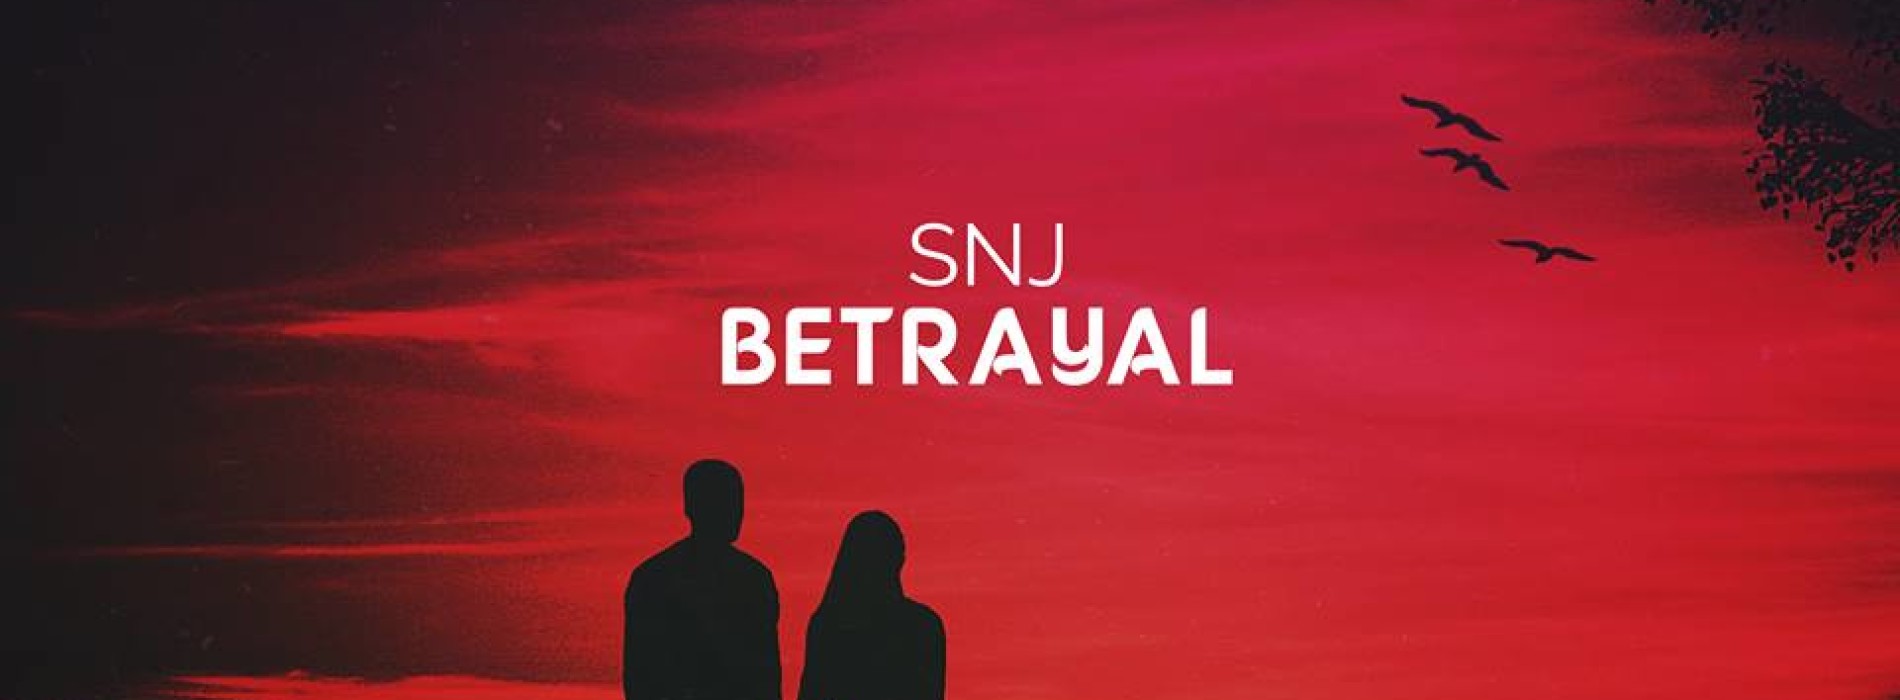 SnJ Announces A New Single